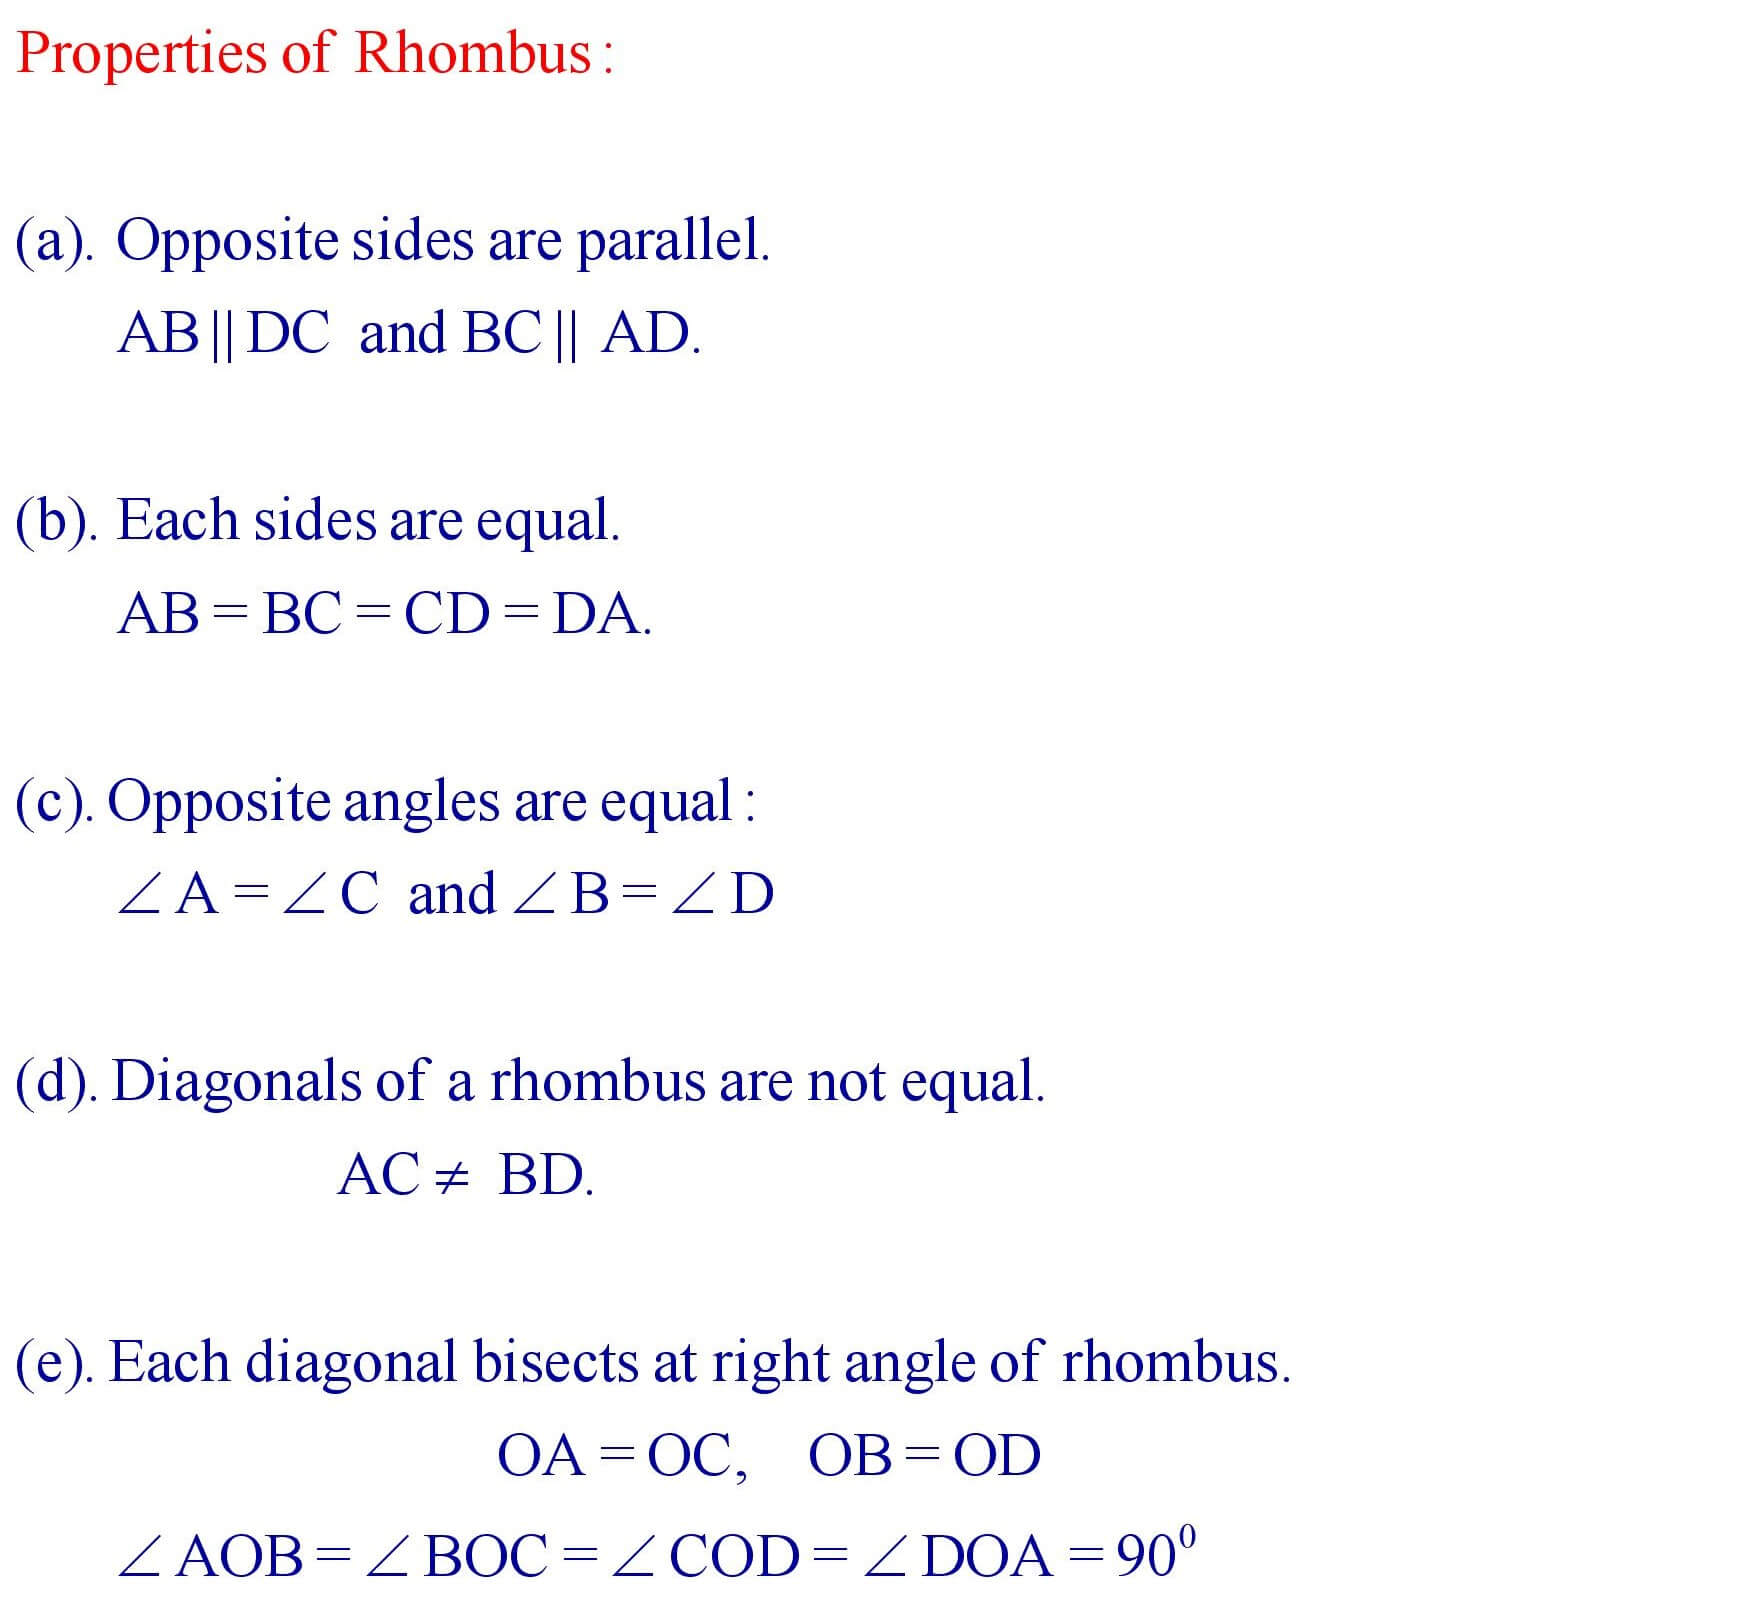 Properties of Rhombus